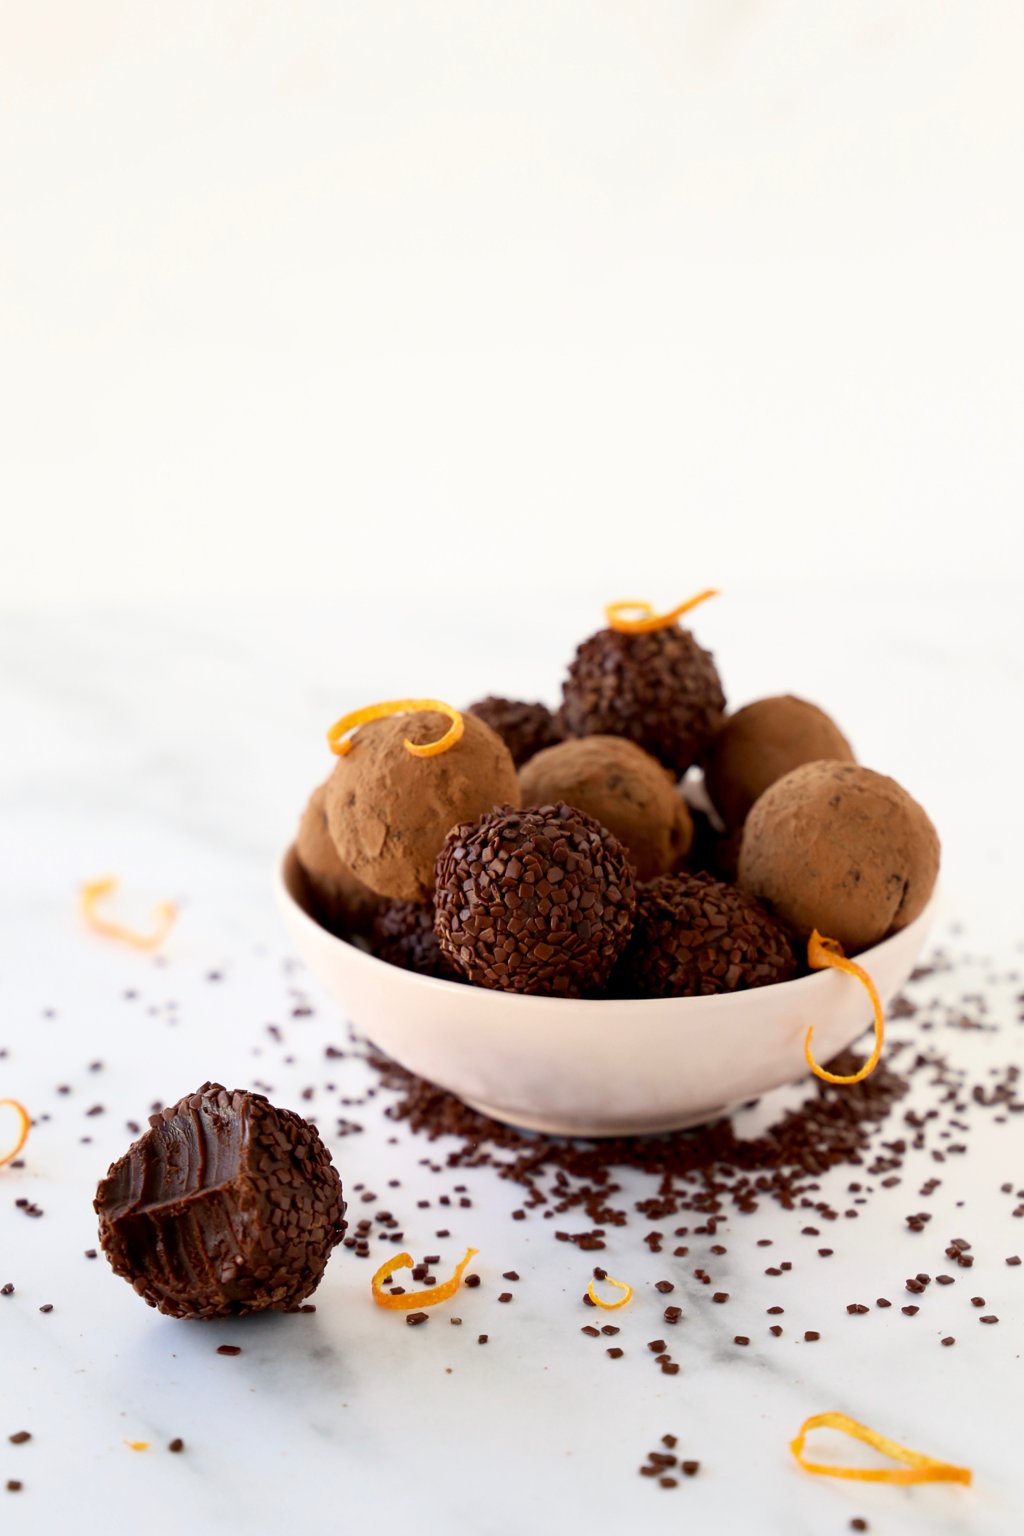 Chocolate Truffles - Basic Chocolate Truffles Recipe